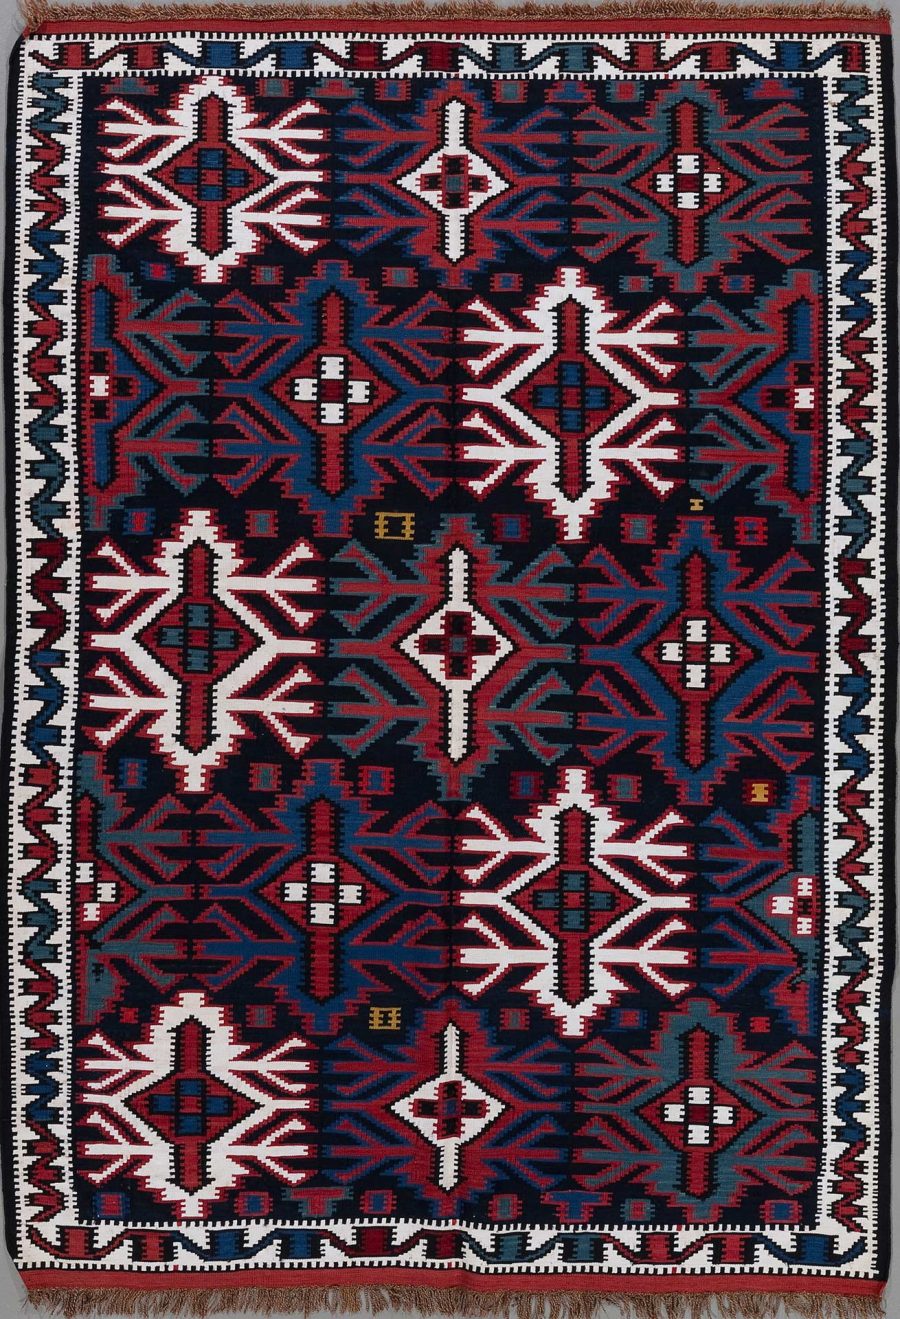 Handgewebter Teppich mit traditionellem Muster in Dunkelblau, Rot, Weiß und kleinen Akzenten in Gelb, symmetrische geometrische Designs und Rautenformen, umrandet von einem gezackten Muster, Fransen an einem Ende.